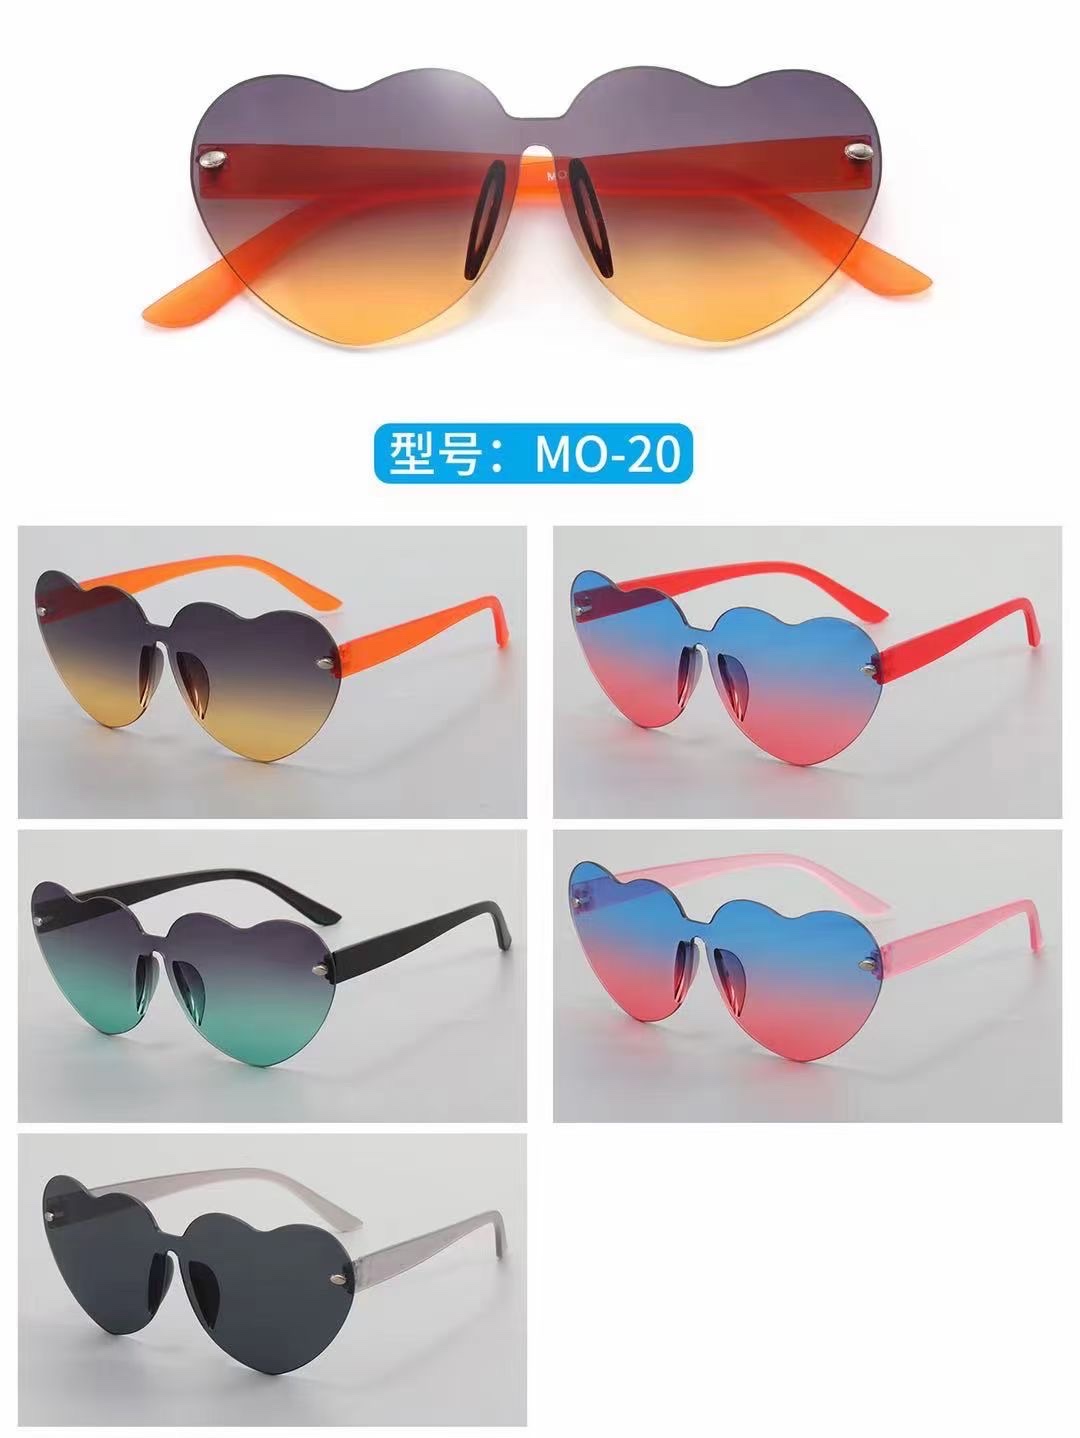 新款2021男女通用渐变色太阳镜防紫外线热卖爆款眼镜产品图